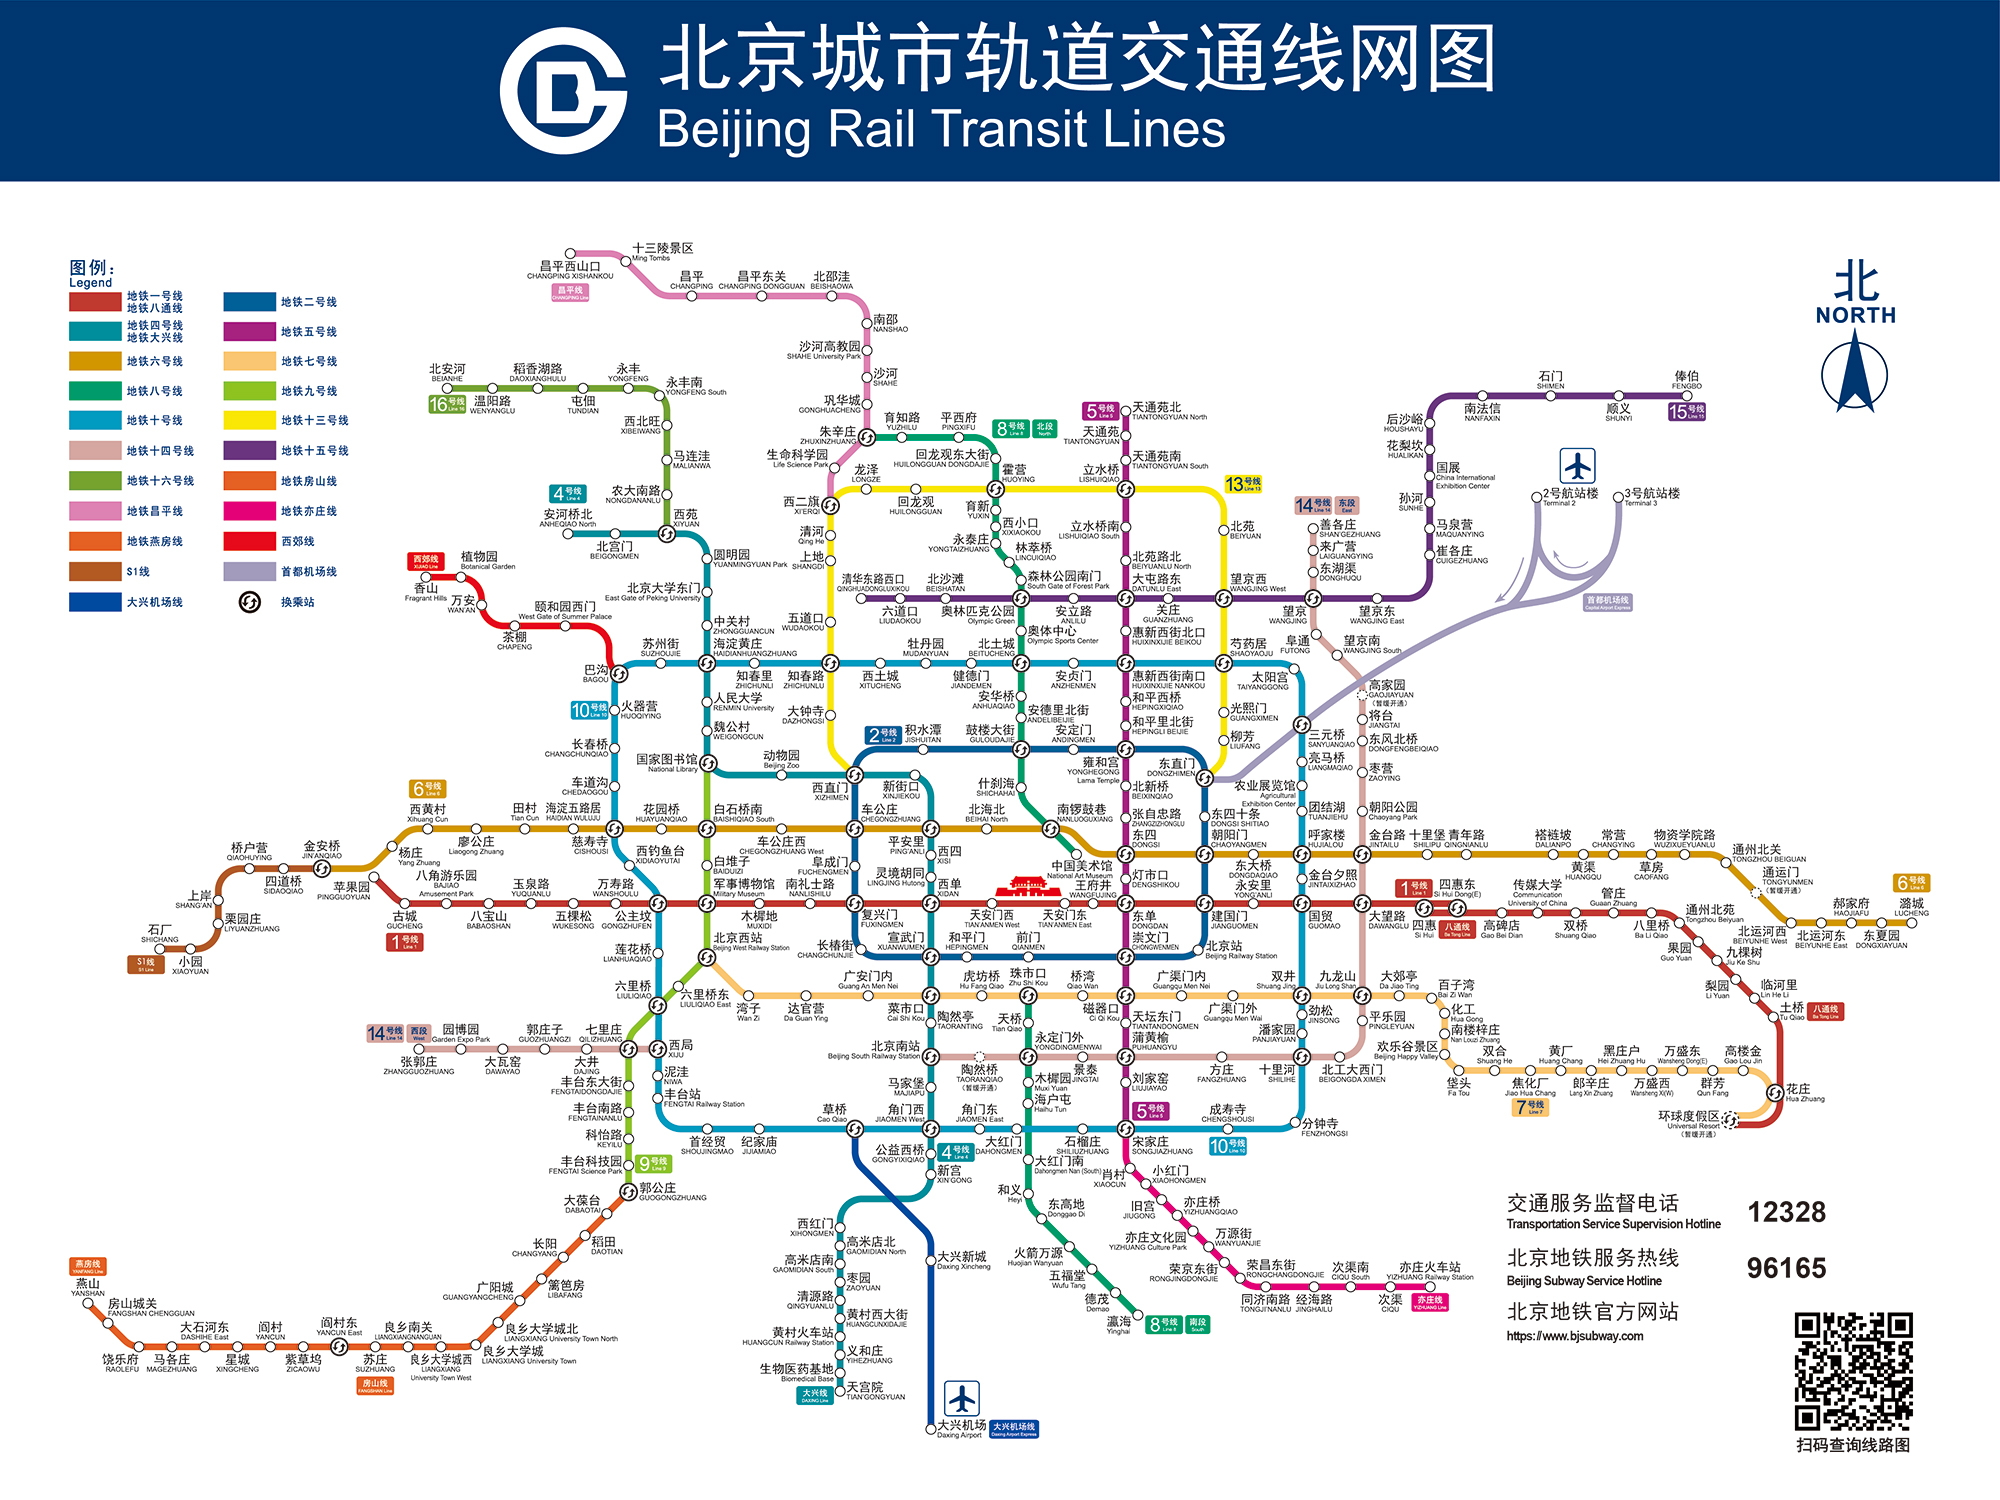 说明:上方图片来自北京地铁官网北京2020年轨道交通路线图说明:上方